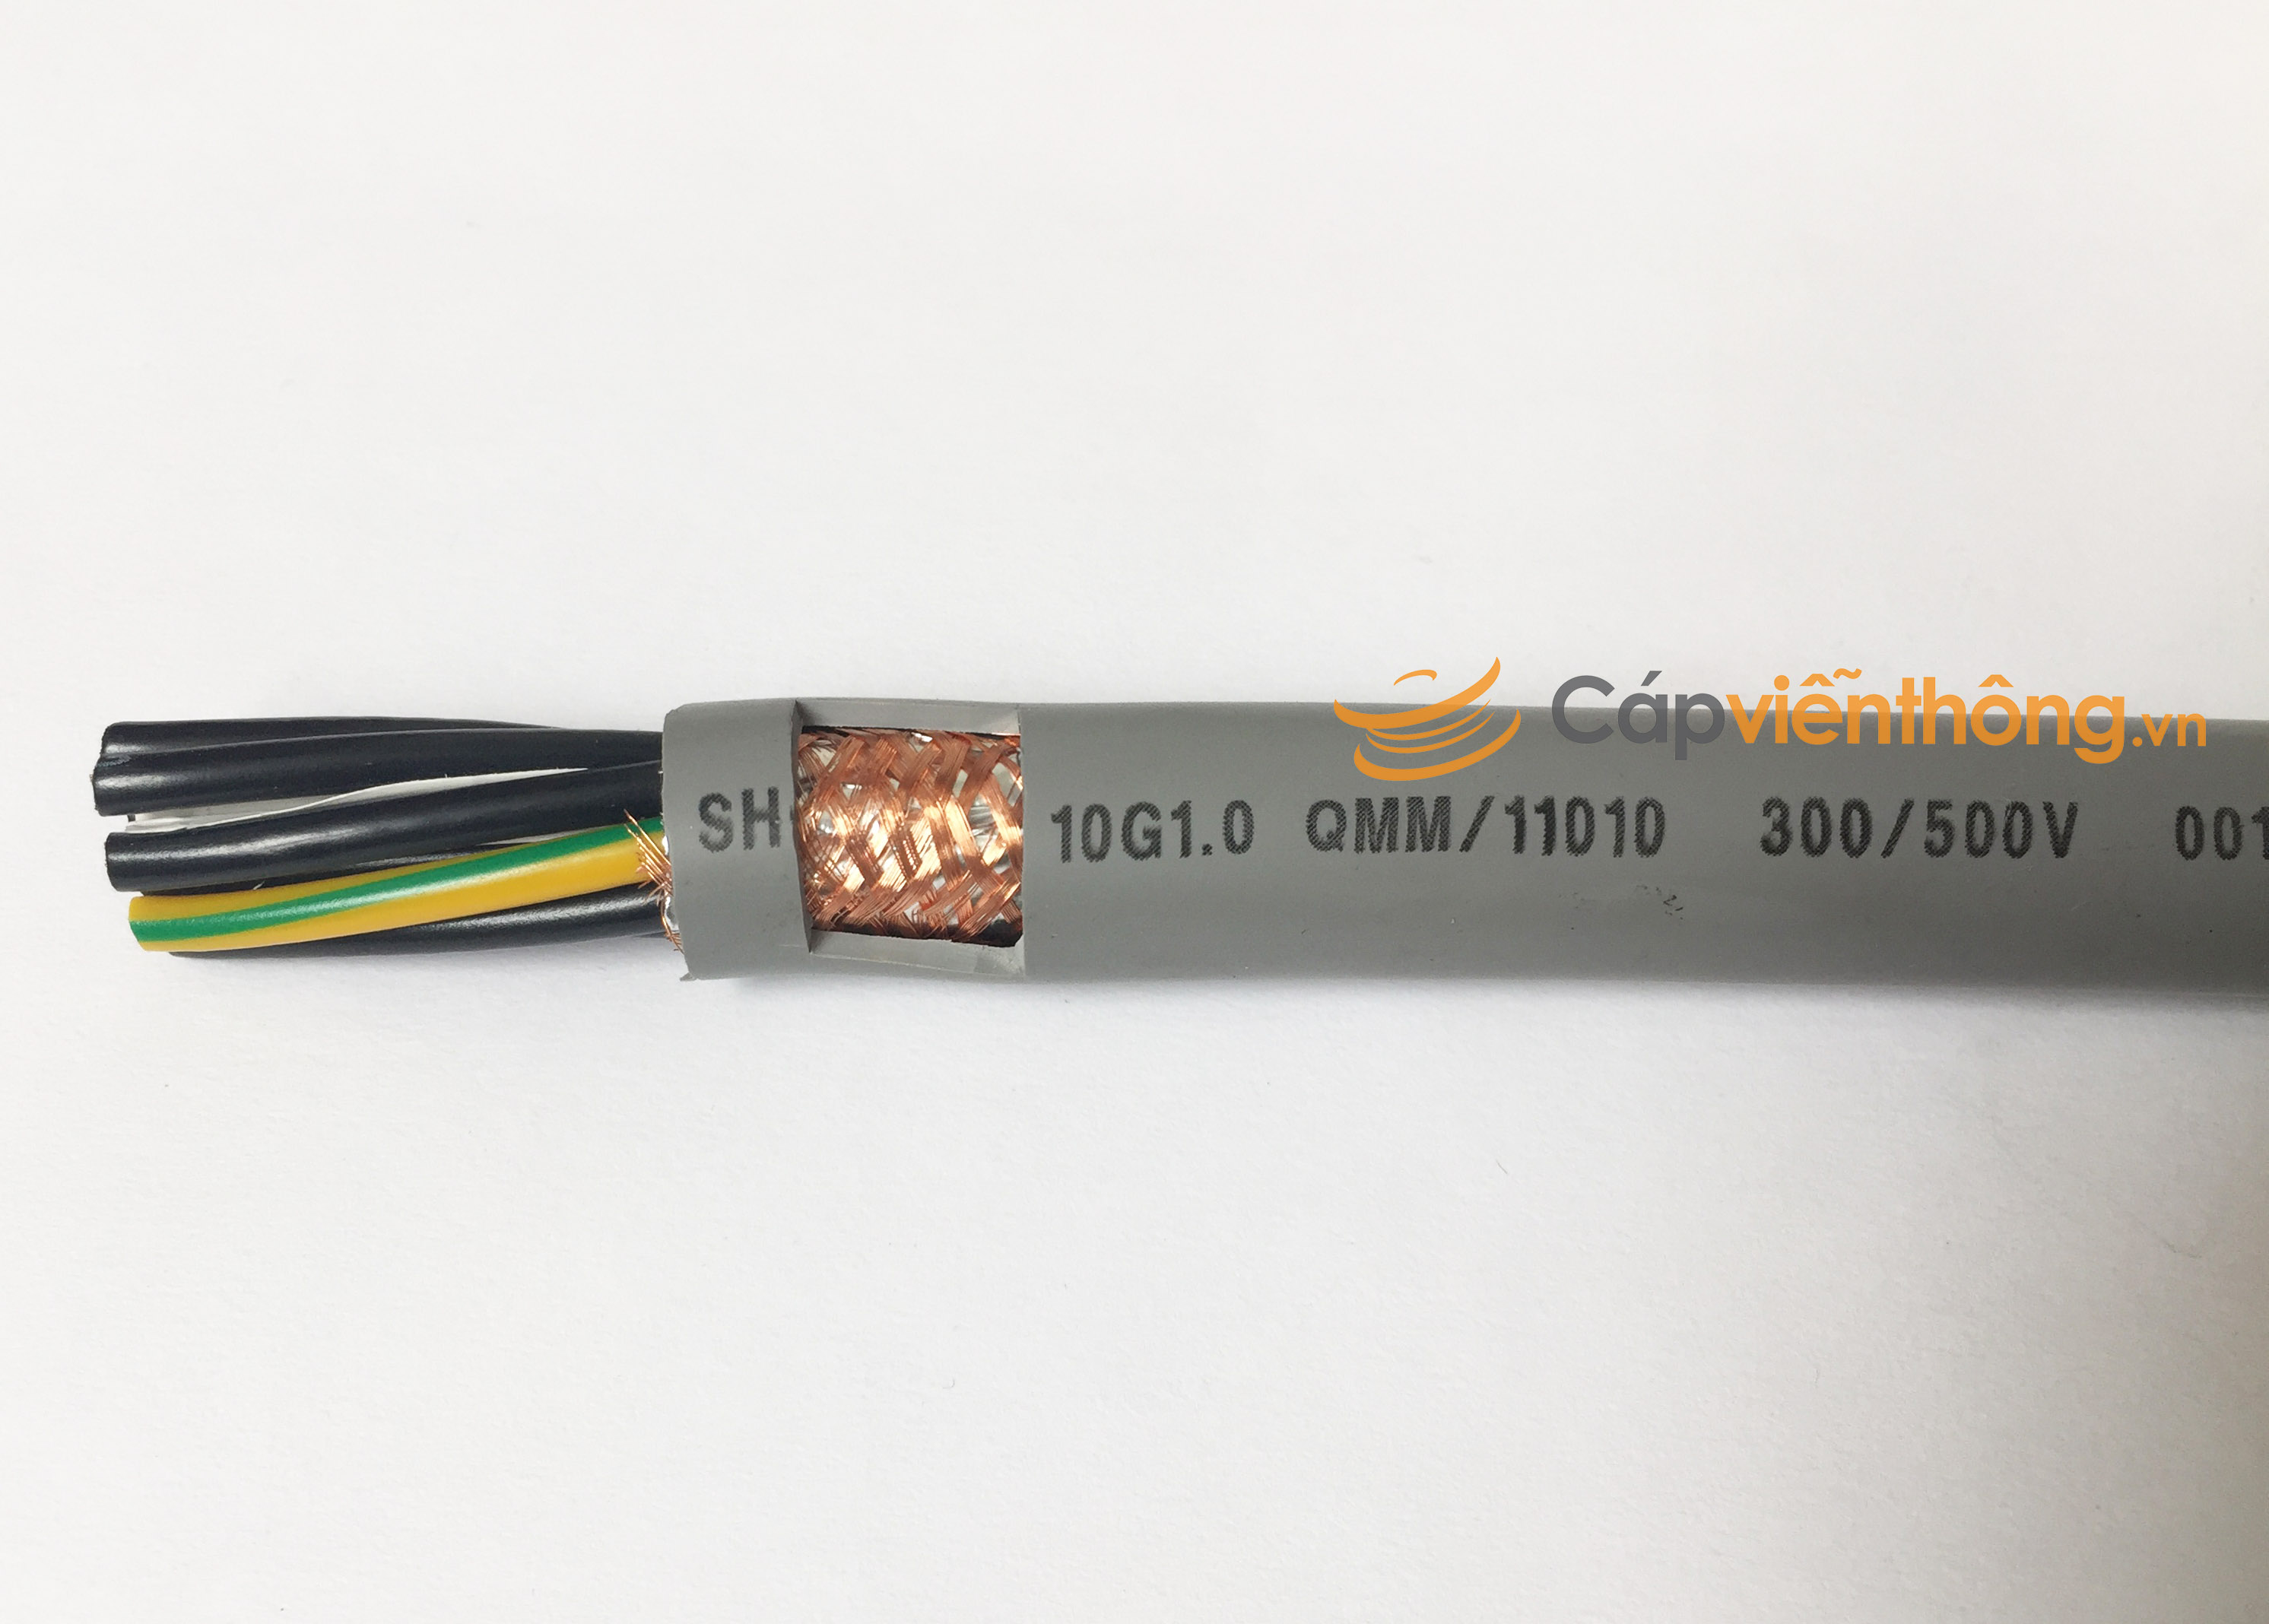 Cáp điều khiển có lưới Altek Kabel SH-500 10G 1.0QMM